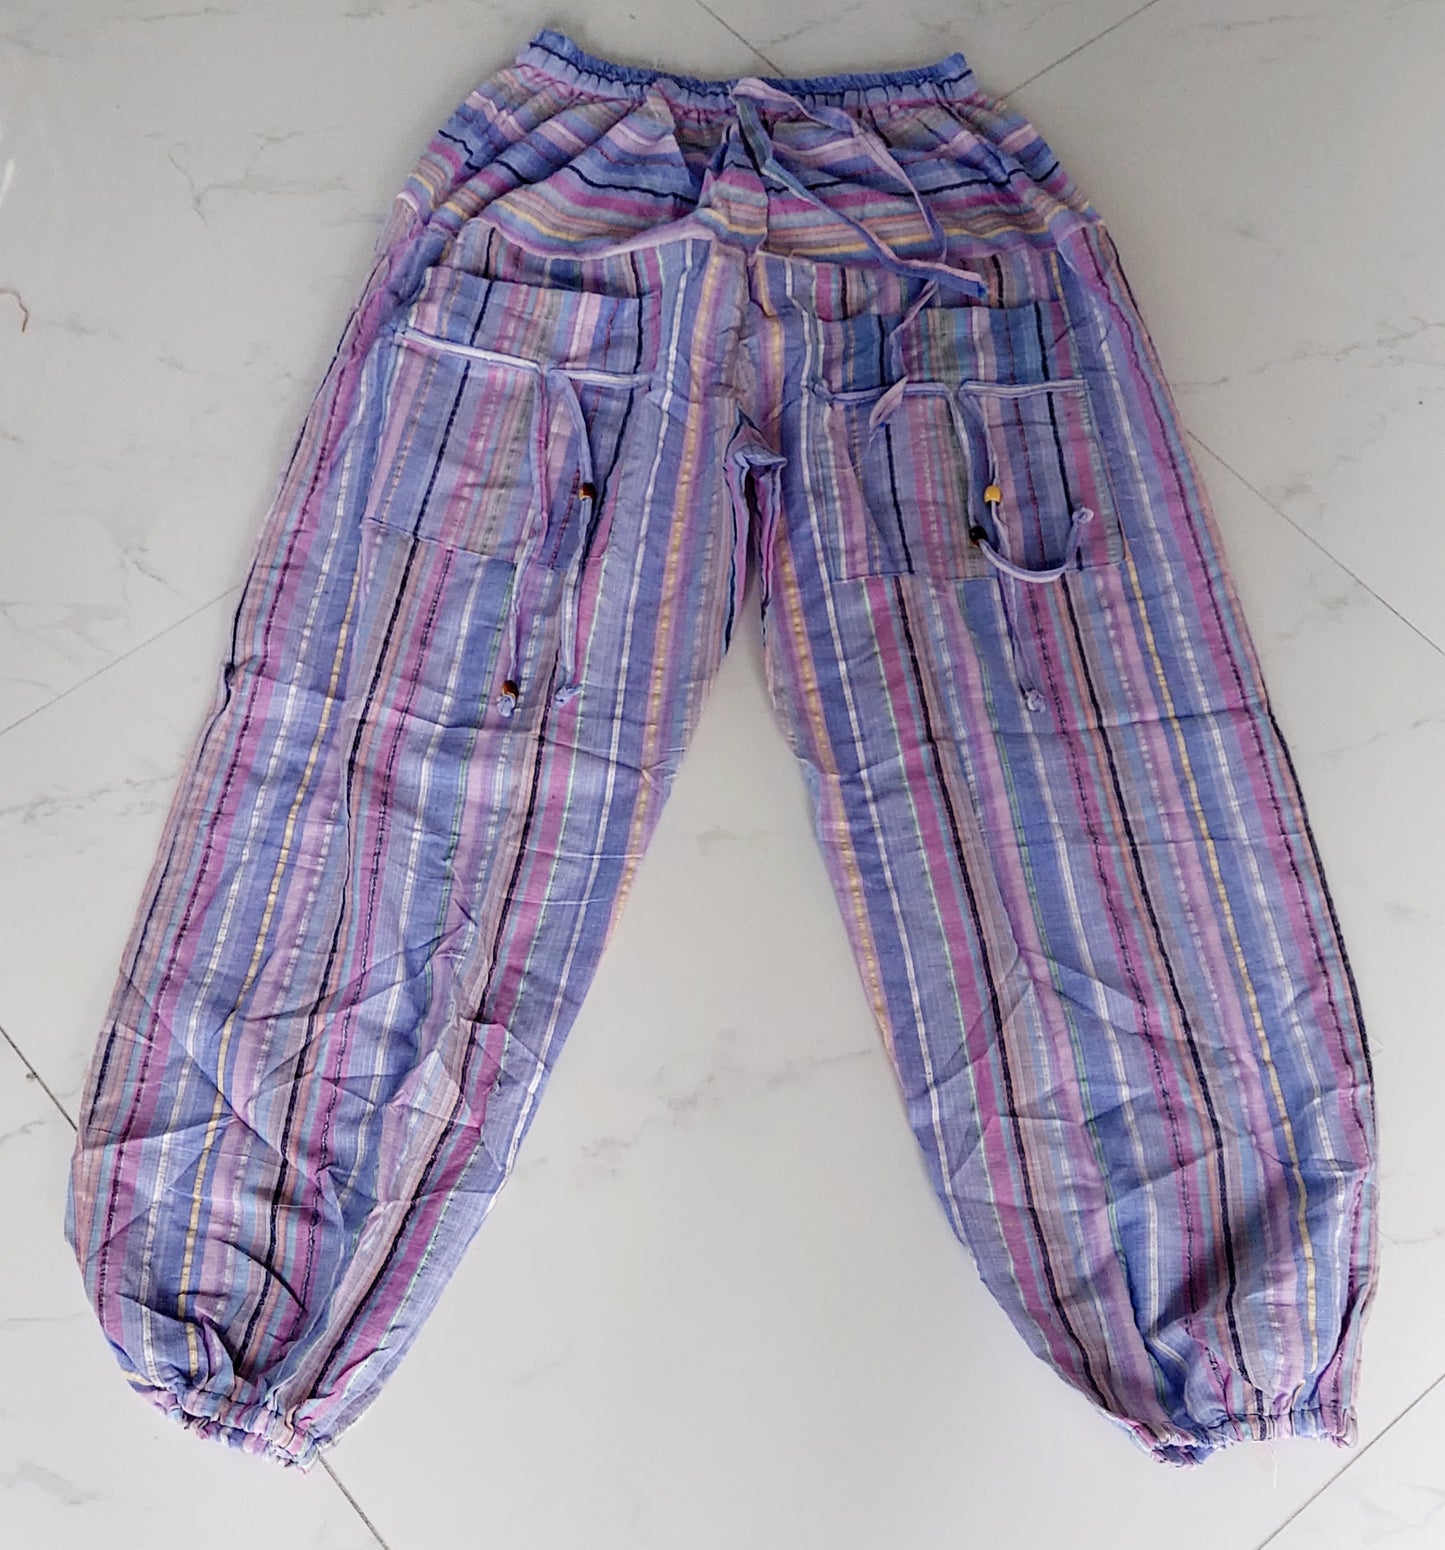 Cotton Yoga pants/ Hippie Boho Pants- Stripe